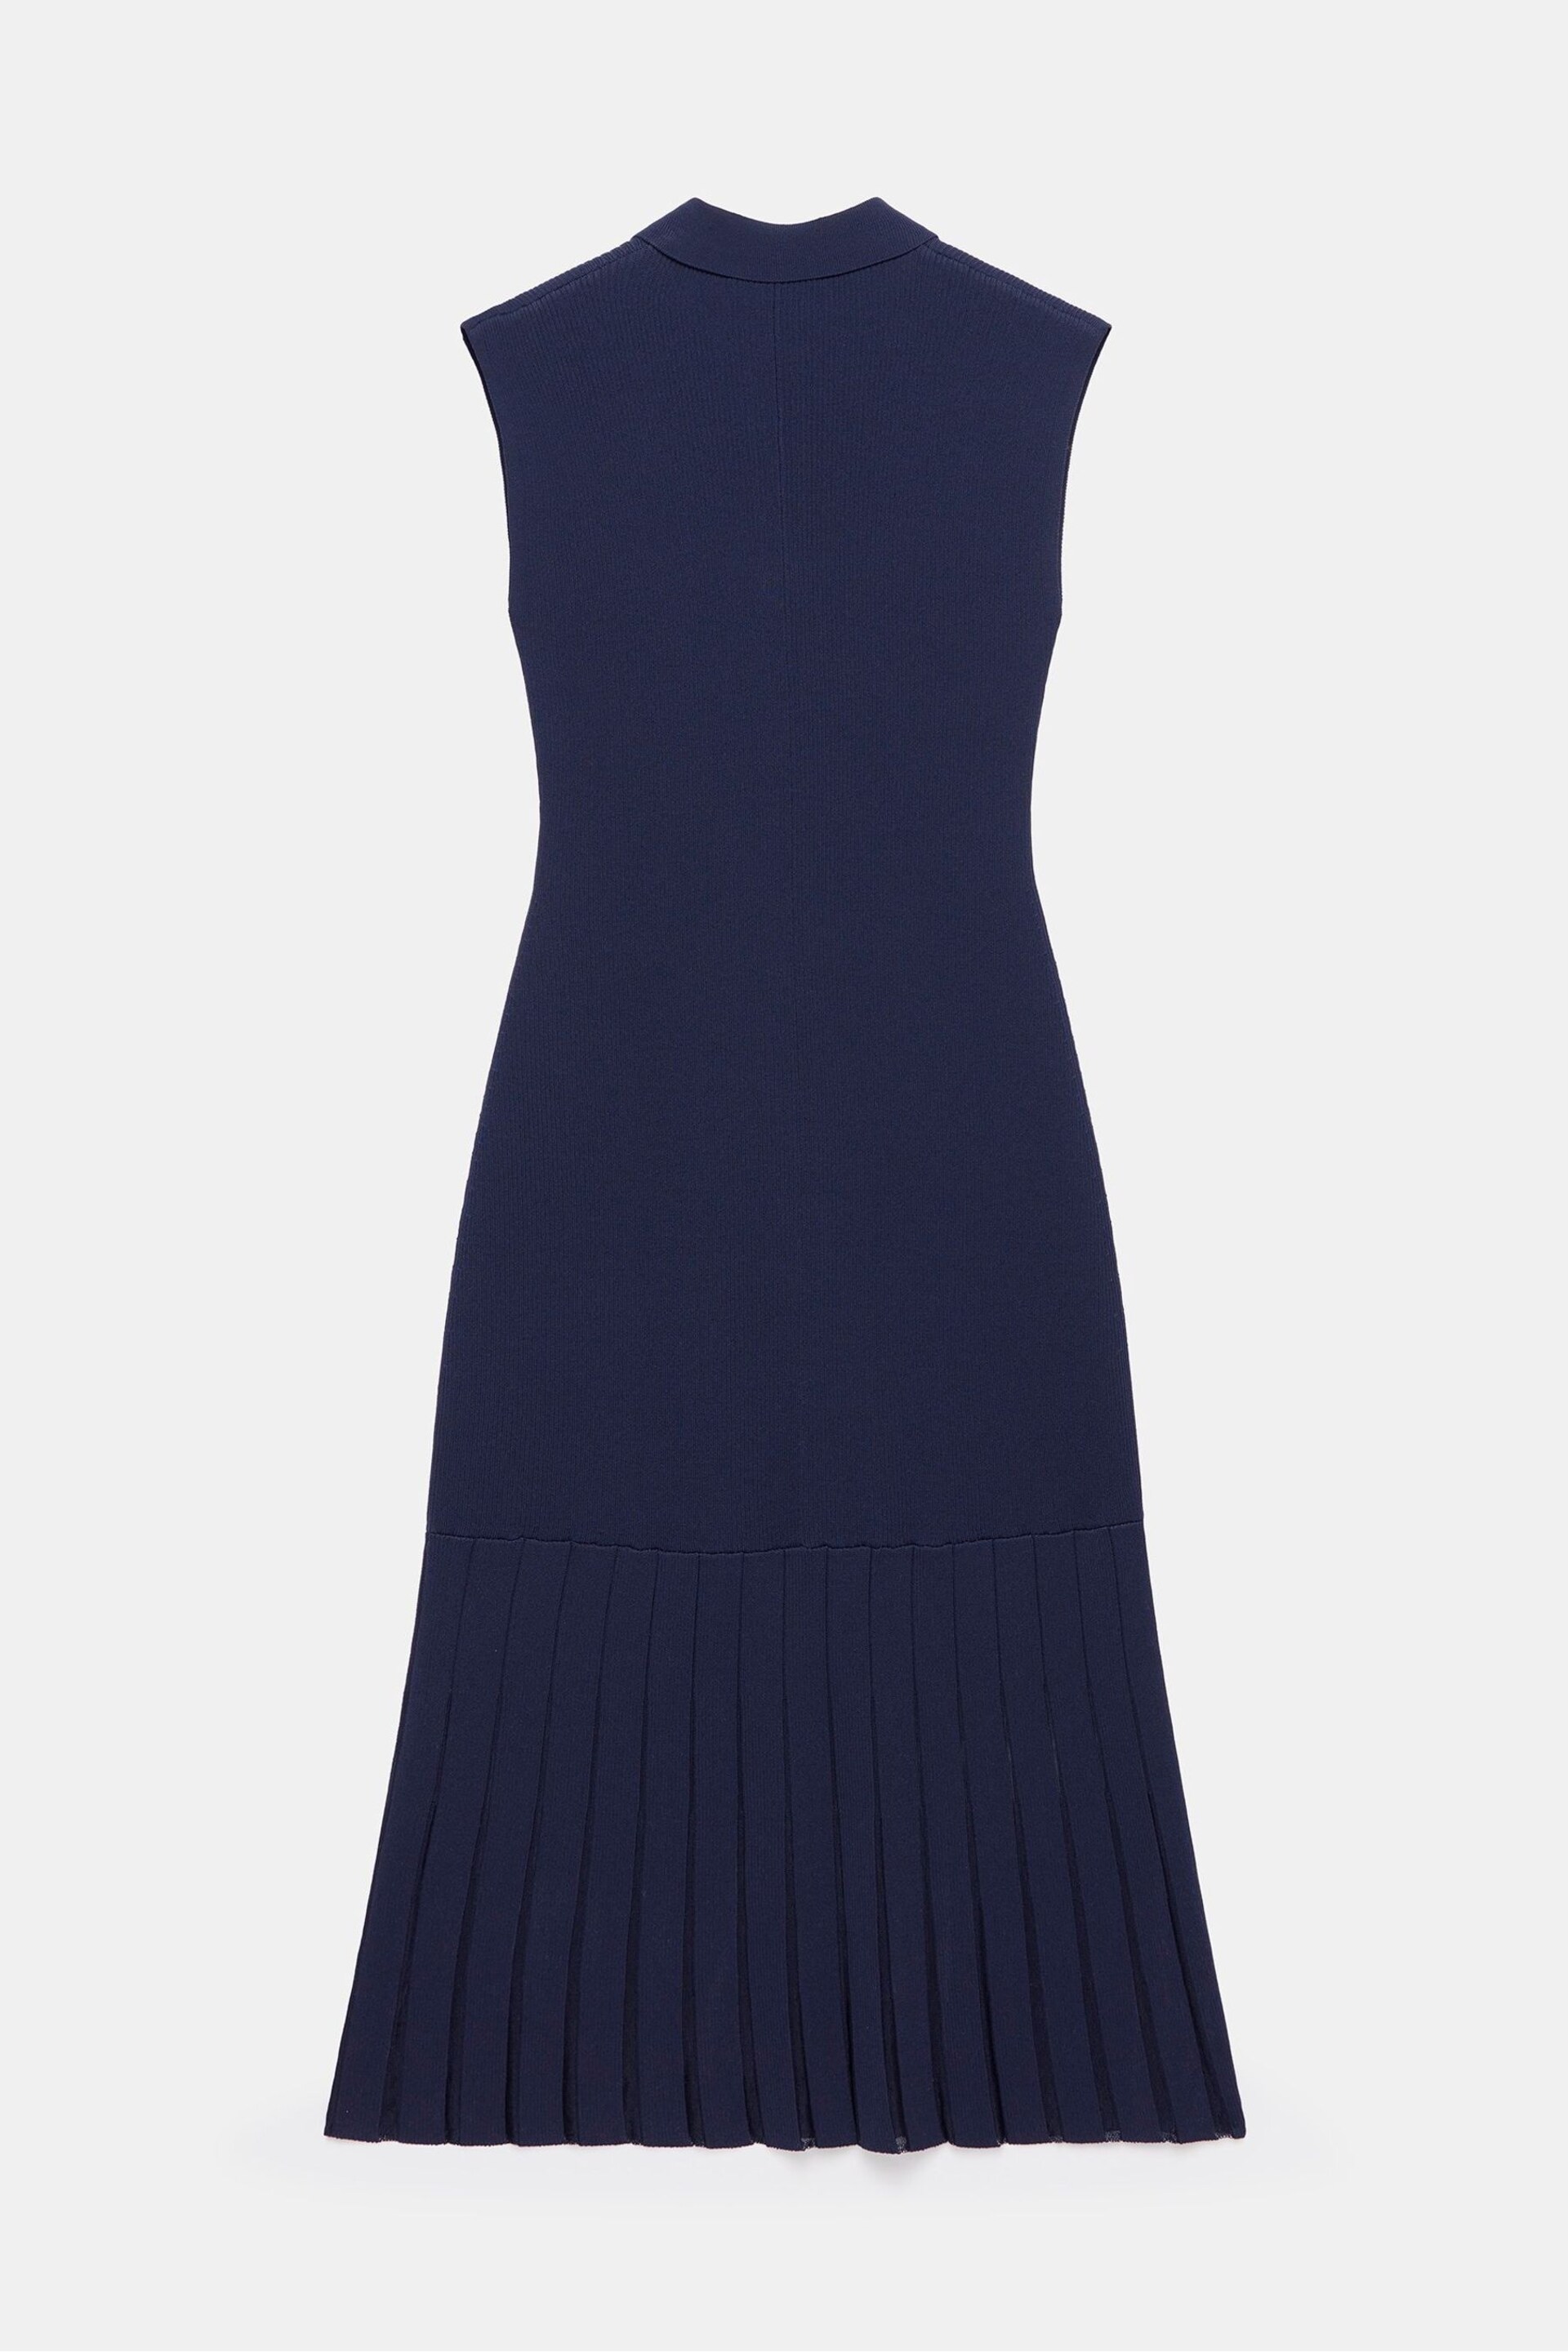 Mint Velvet Blue Sheer Detail Midi Dress - Image 4 of 4